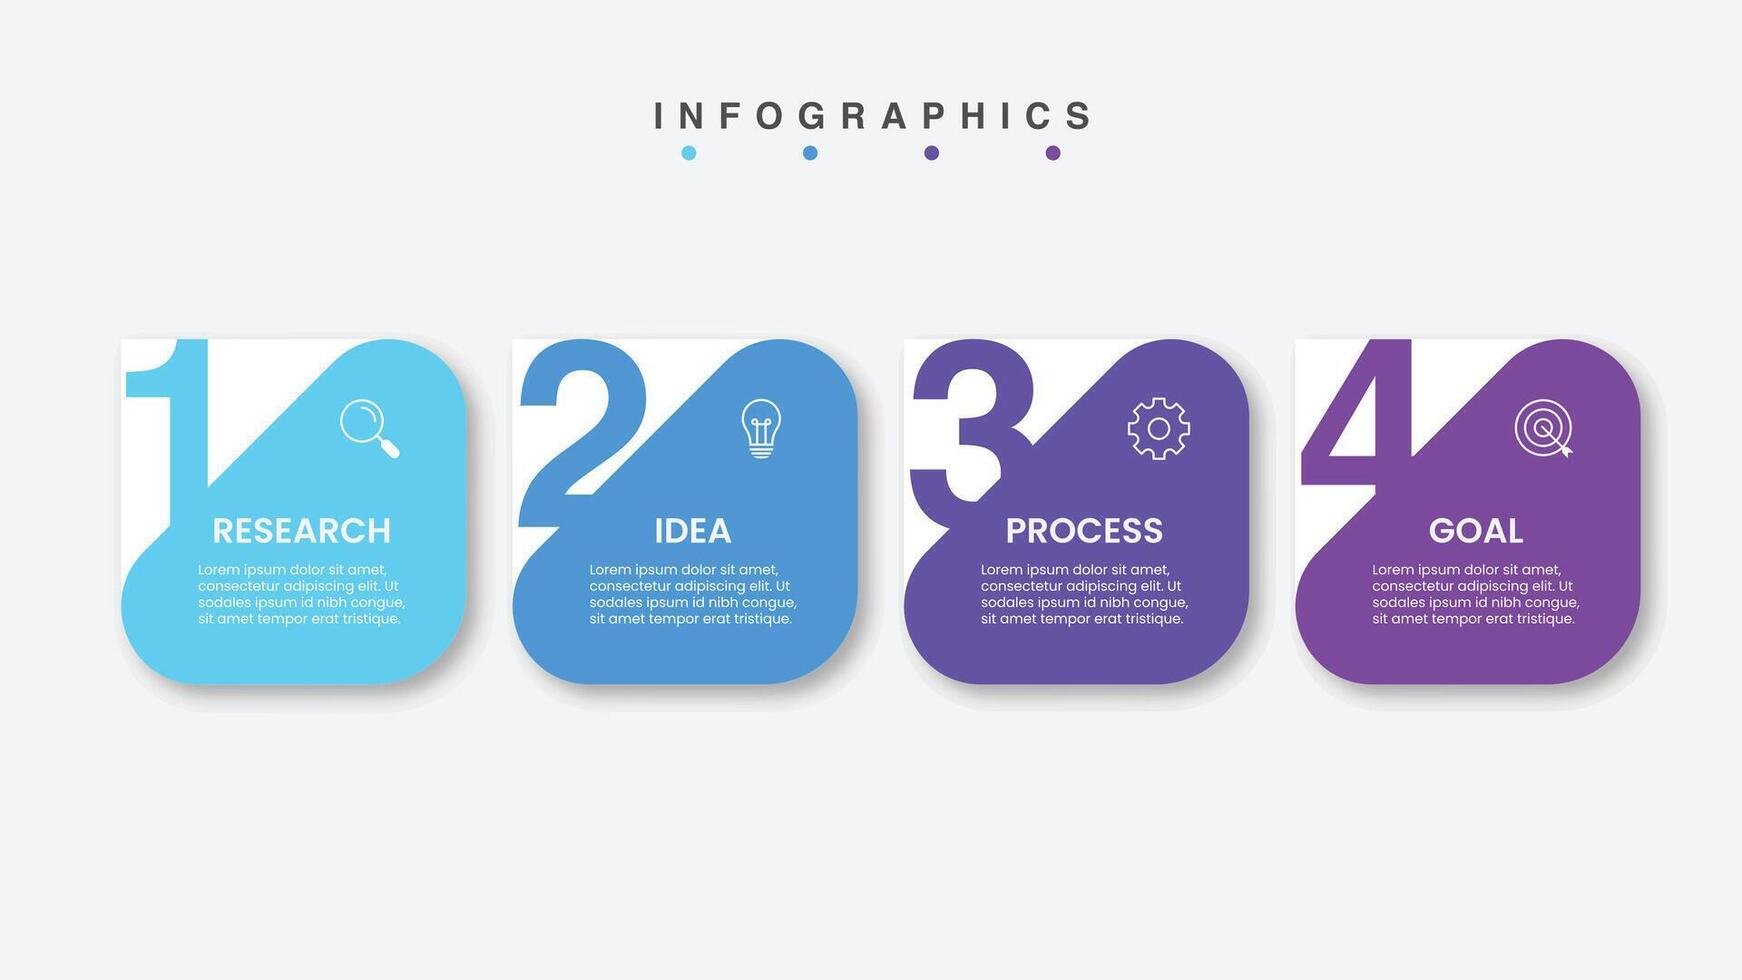 infografía diseño negocio modelo con íconos y 4 4 opciones o pasos. vector